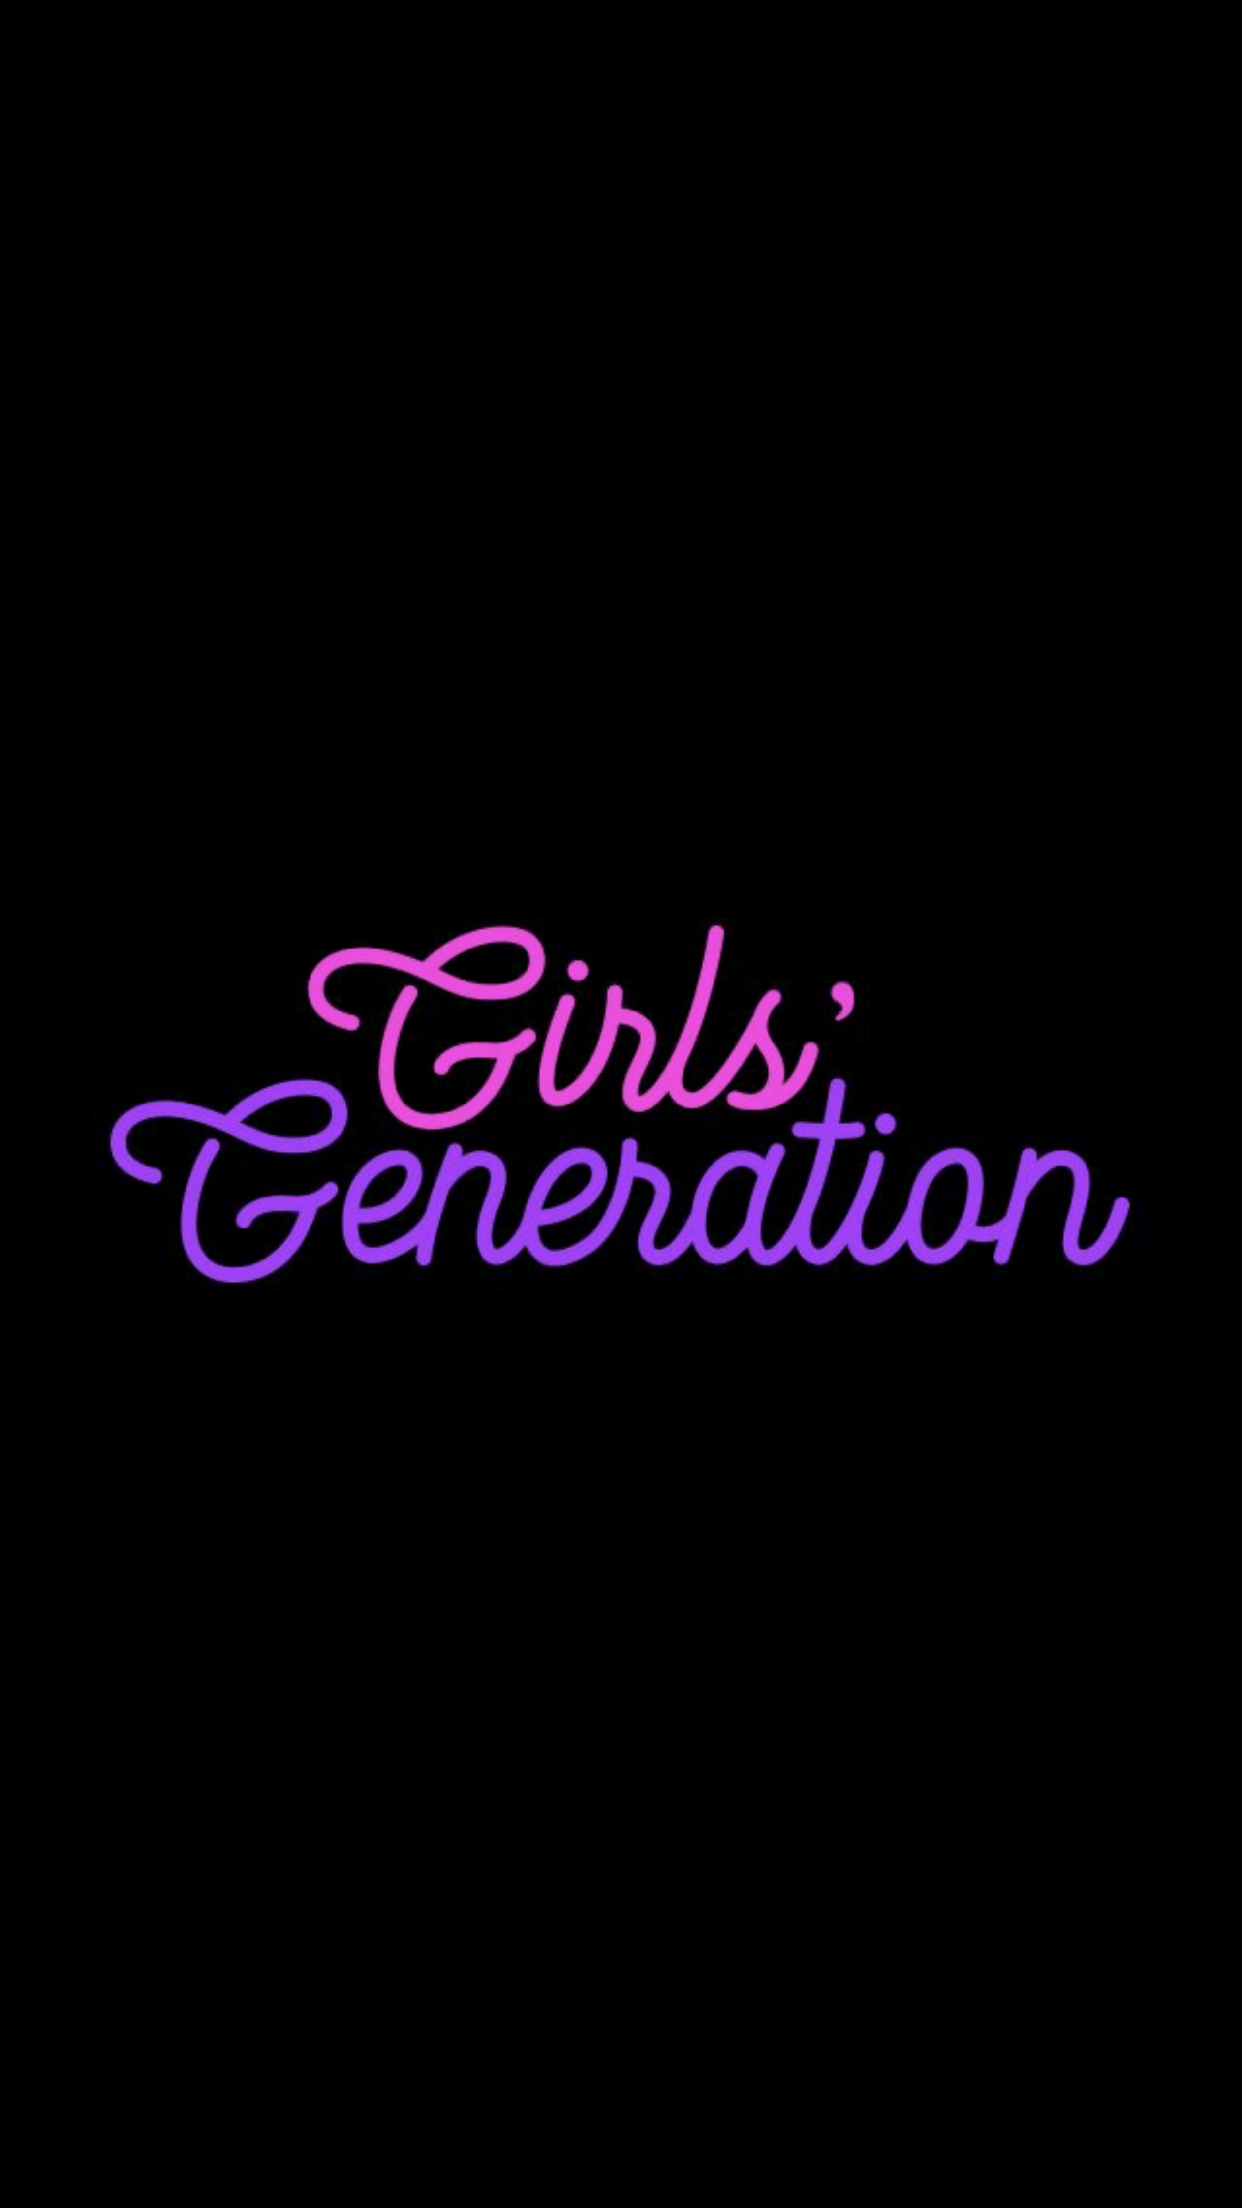 Girls' Generation Logo Wallpapers - Top Free Girls' Generation Logo ...